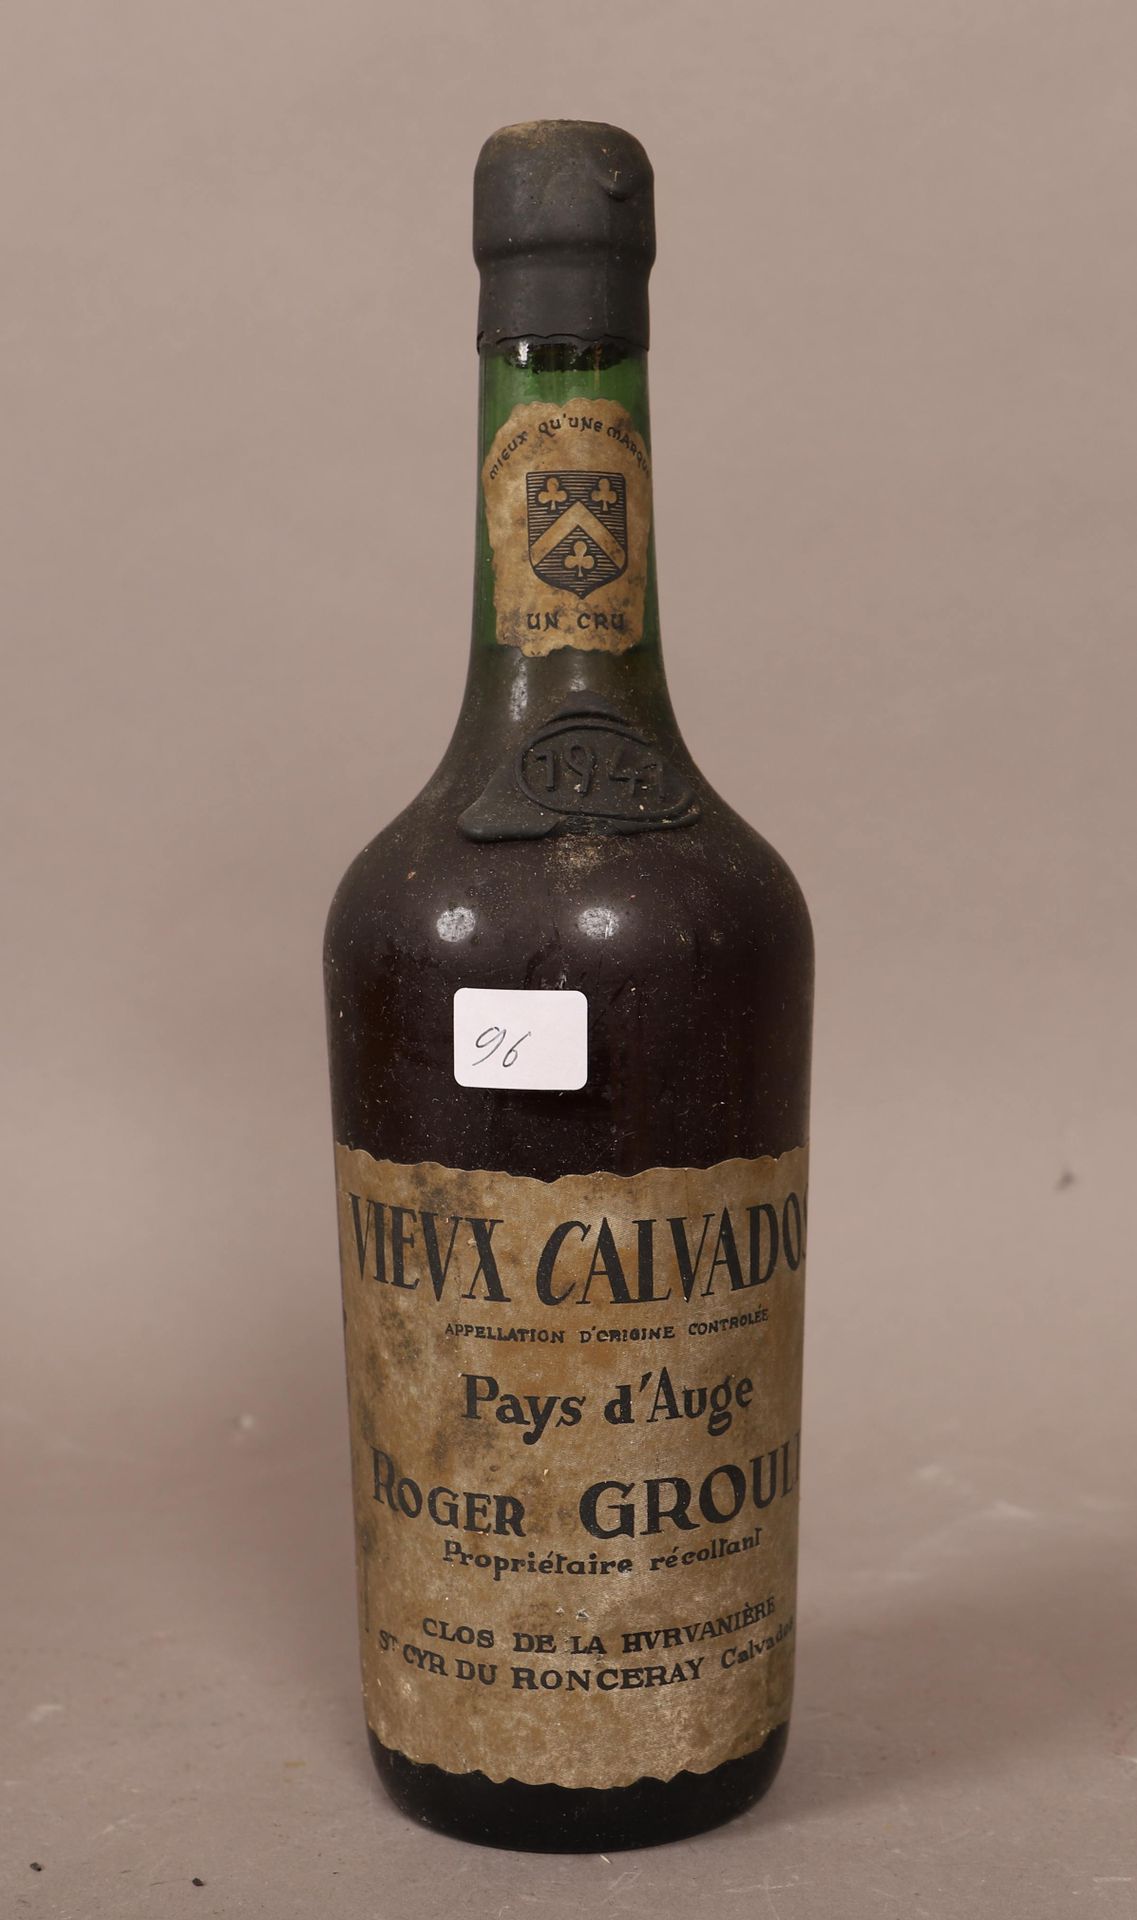 Null Calvados (x1)

Pays d'Auge

1941

0,70L